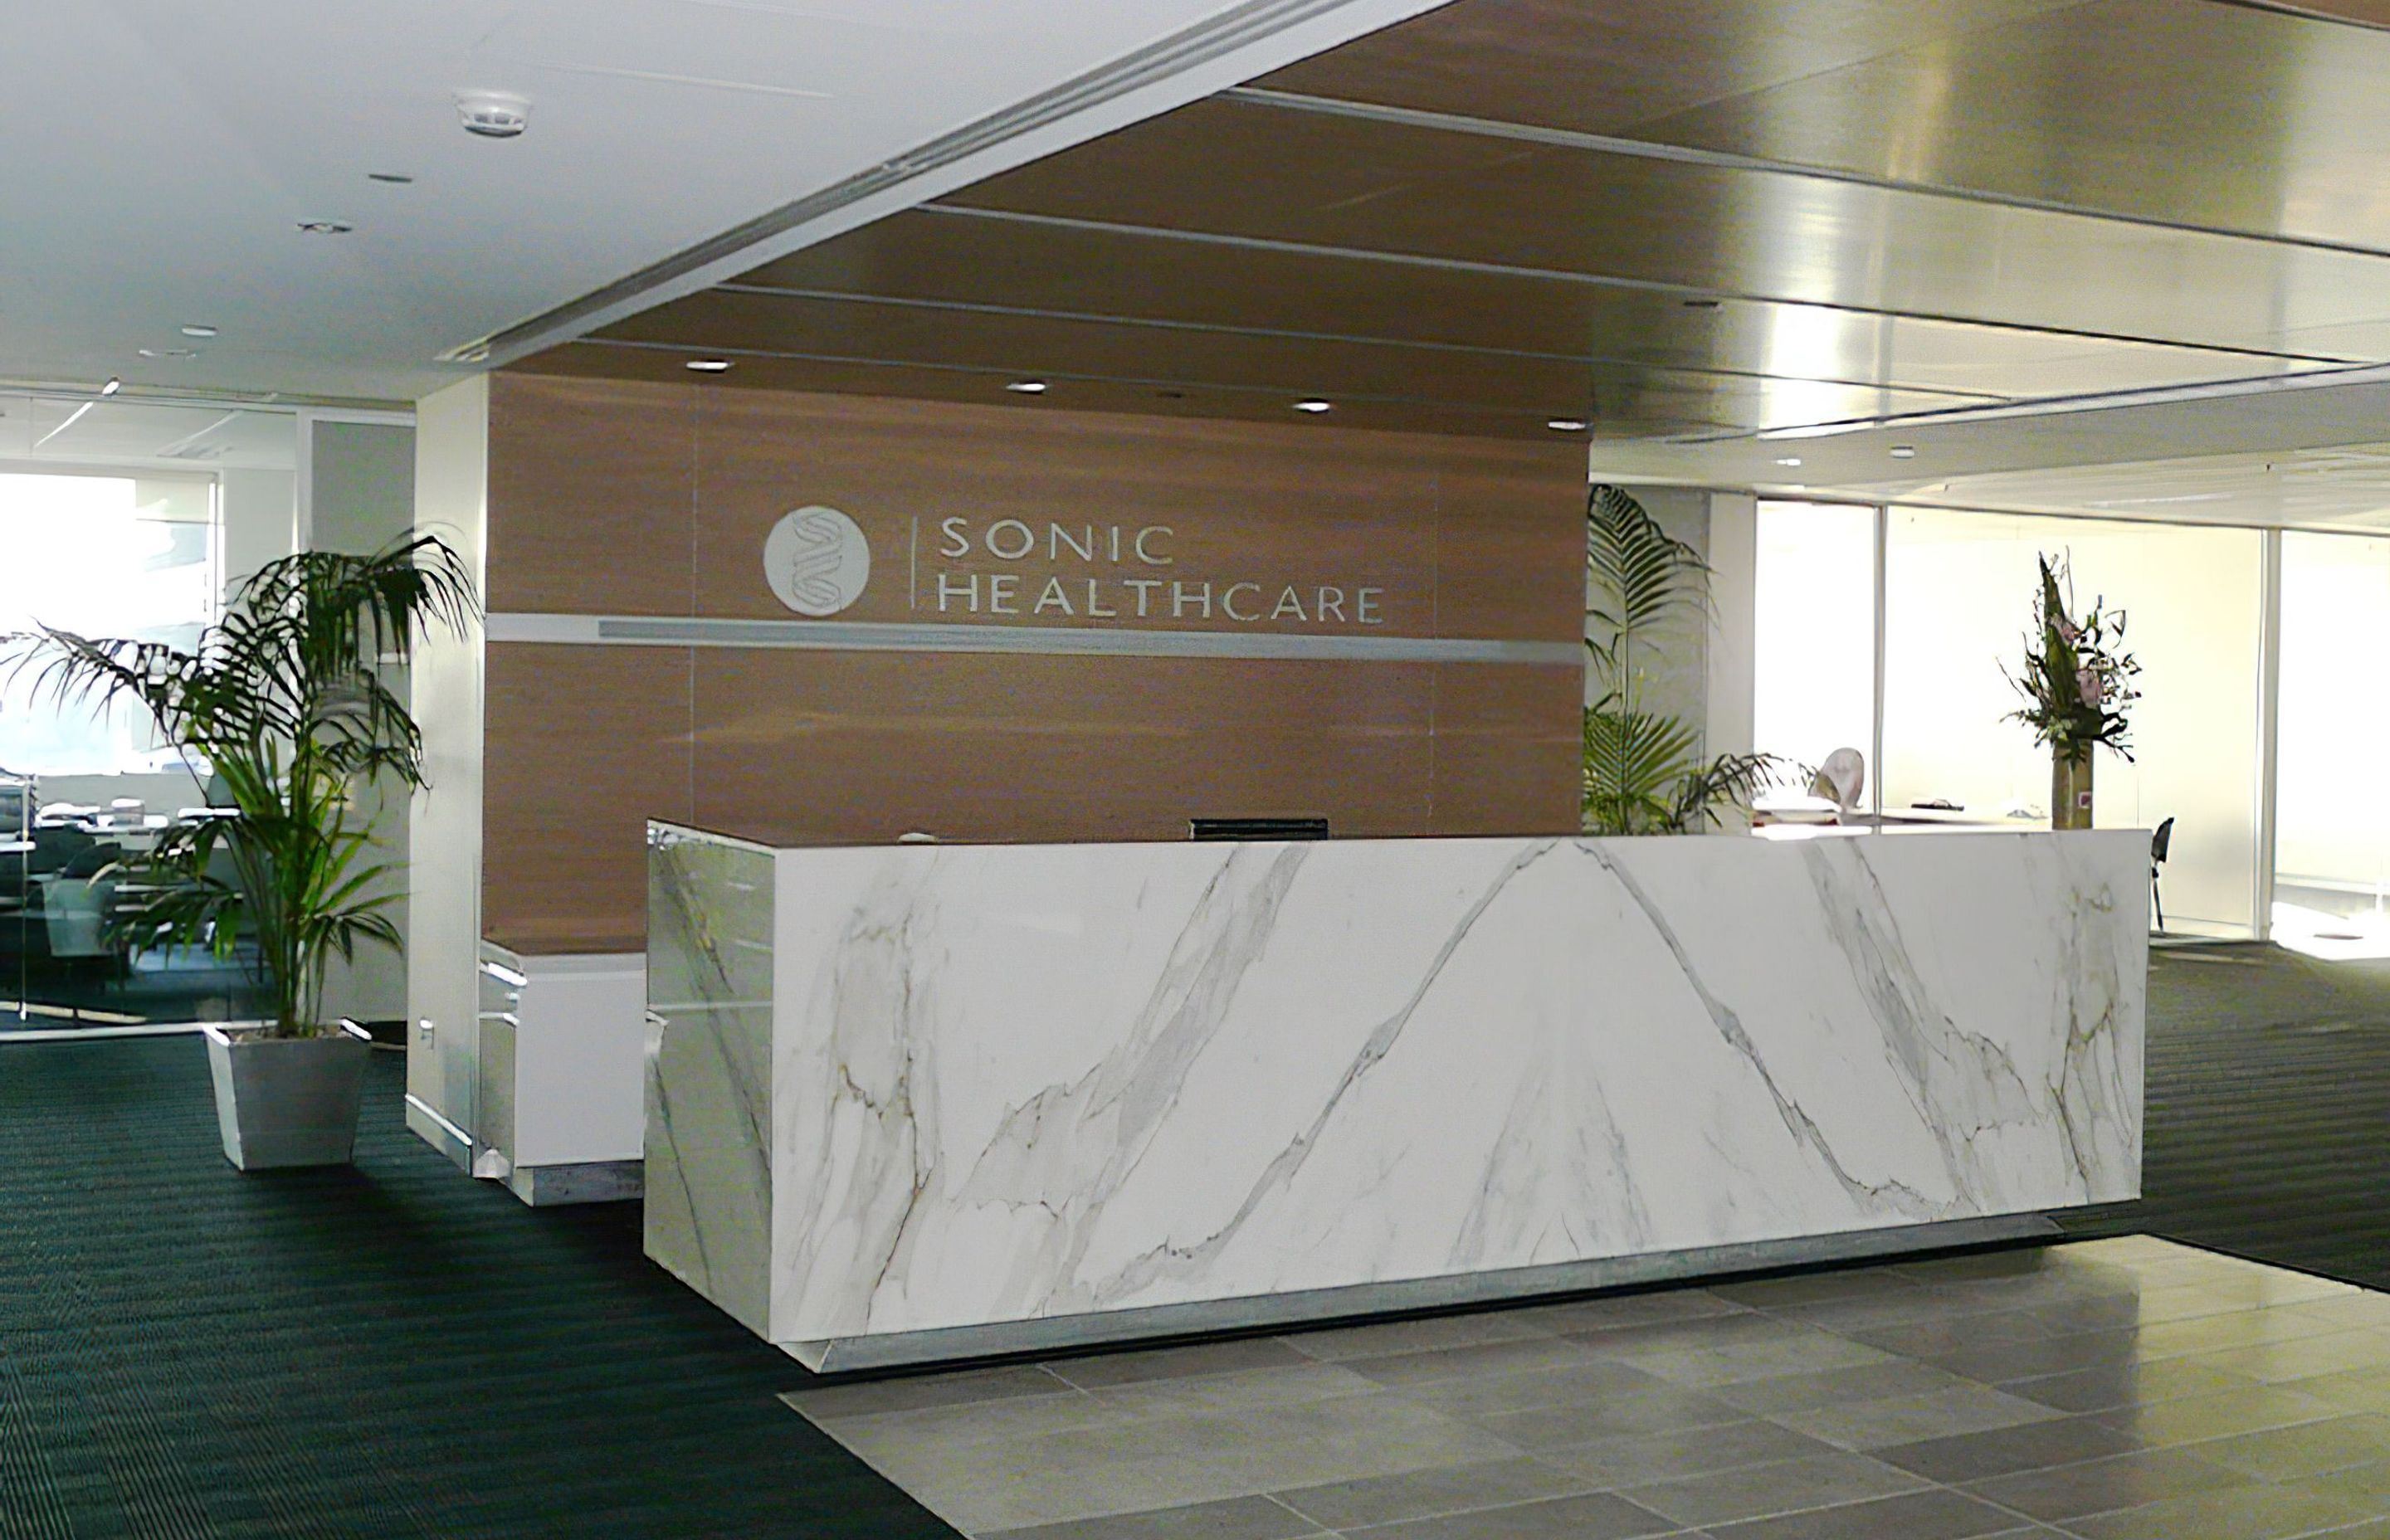 ##Sonic Healthcare